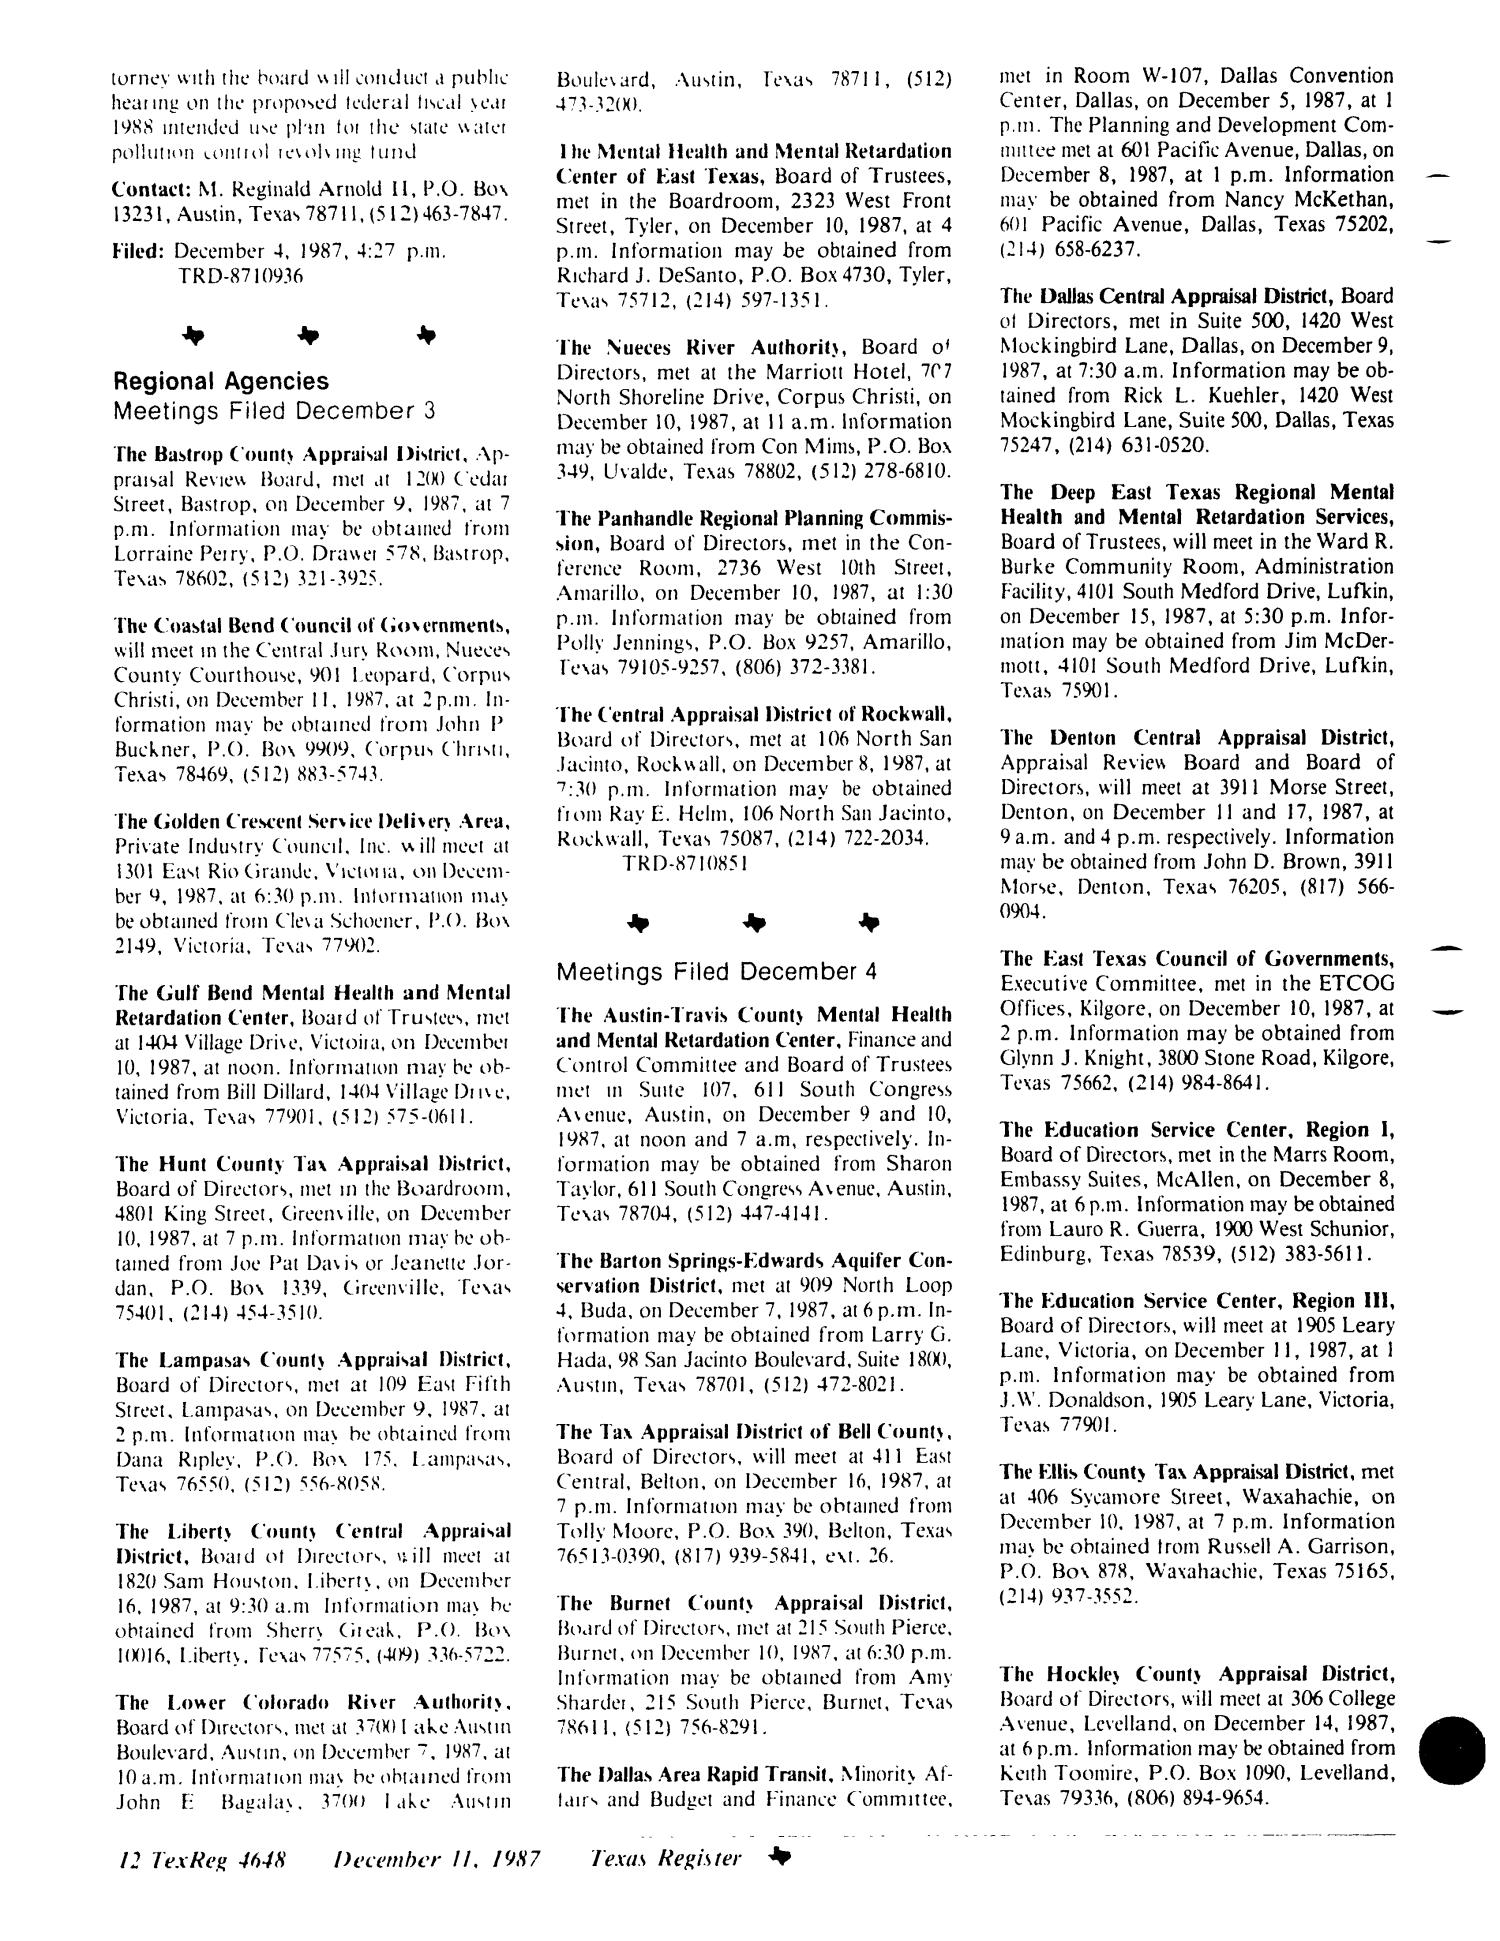 Texas Register, Volume 12, Number 92, Pages 4605-4656, December 11, 1987
                                                
                                                    4648
                                                